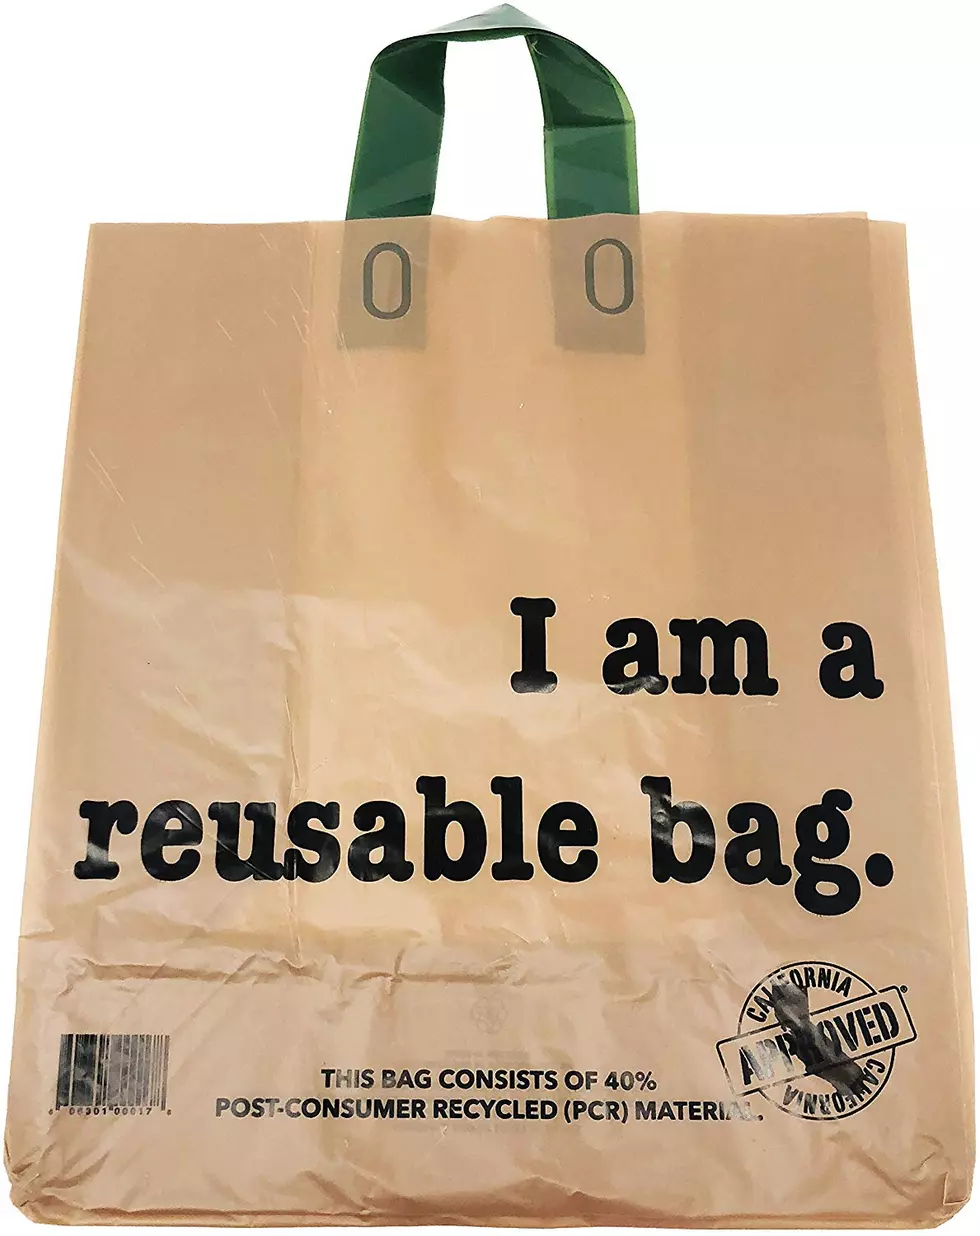 How Often Do You Use Reusable Shopping Bags?